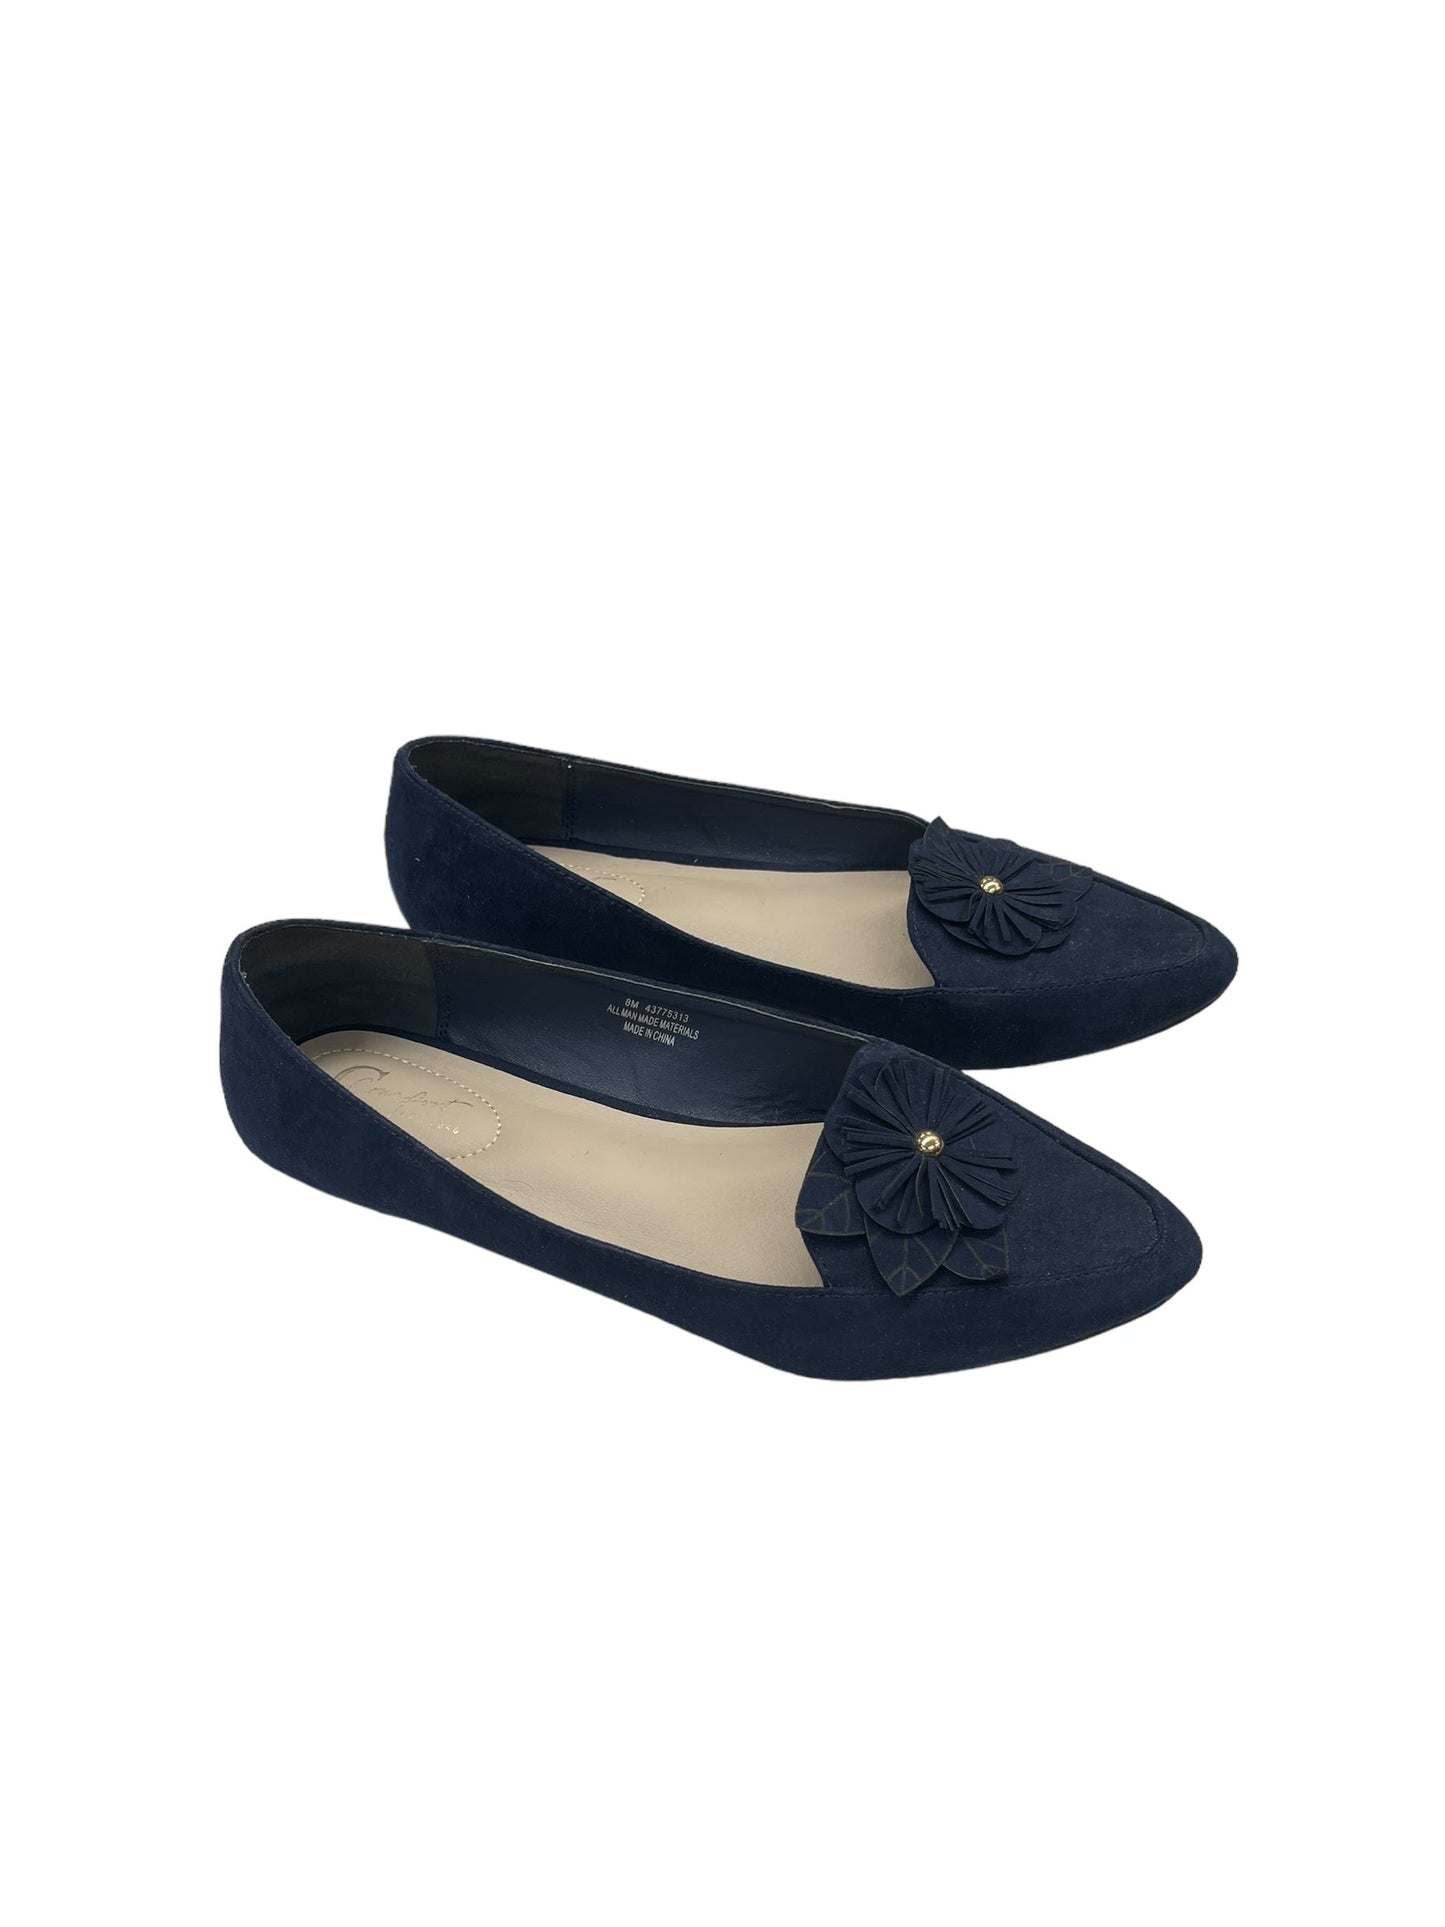 Blue Shoes Flats Comfort Plus, Size 8